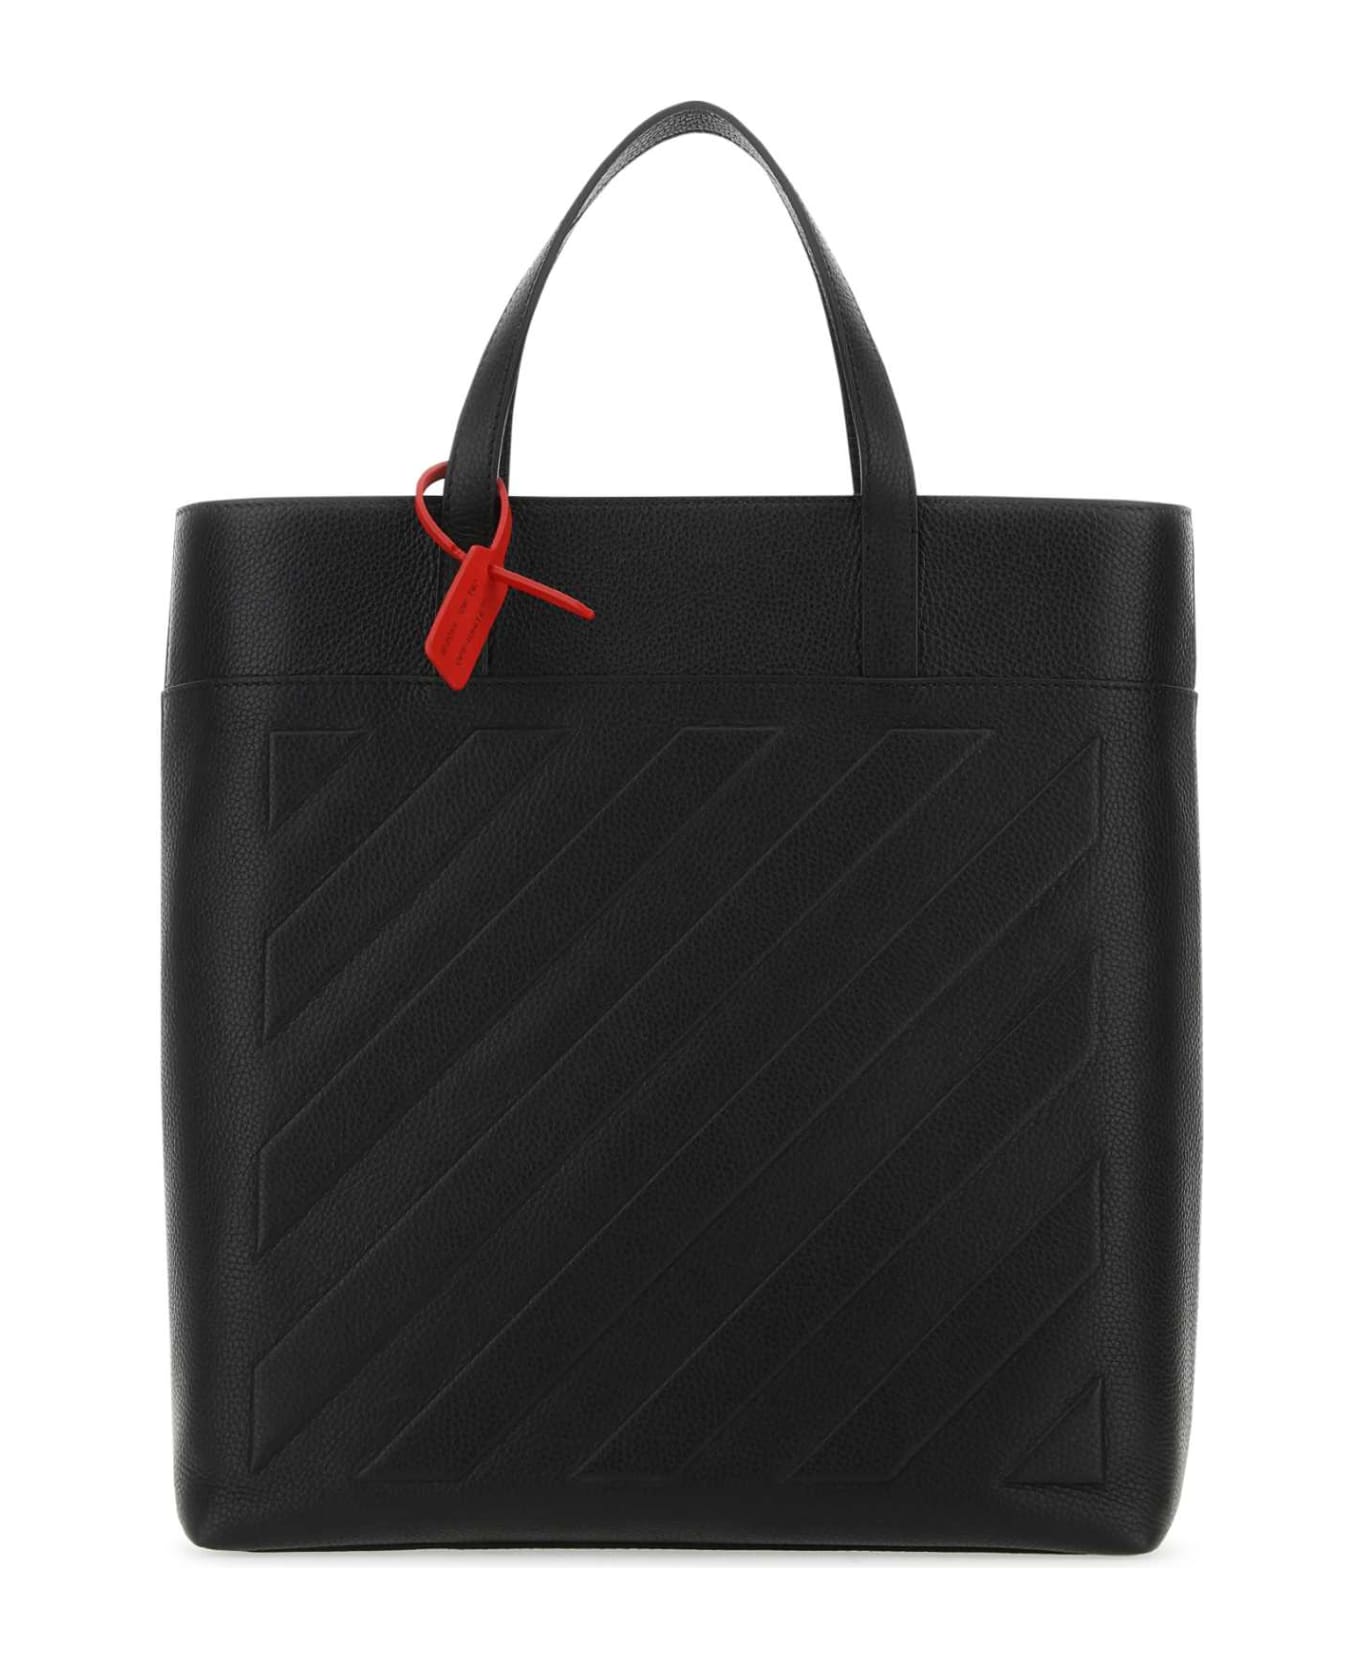 Off-White Black Leather Binder Shopping Bag - BLACKNOCOLOR